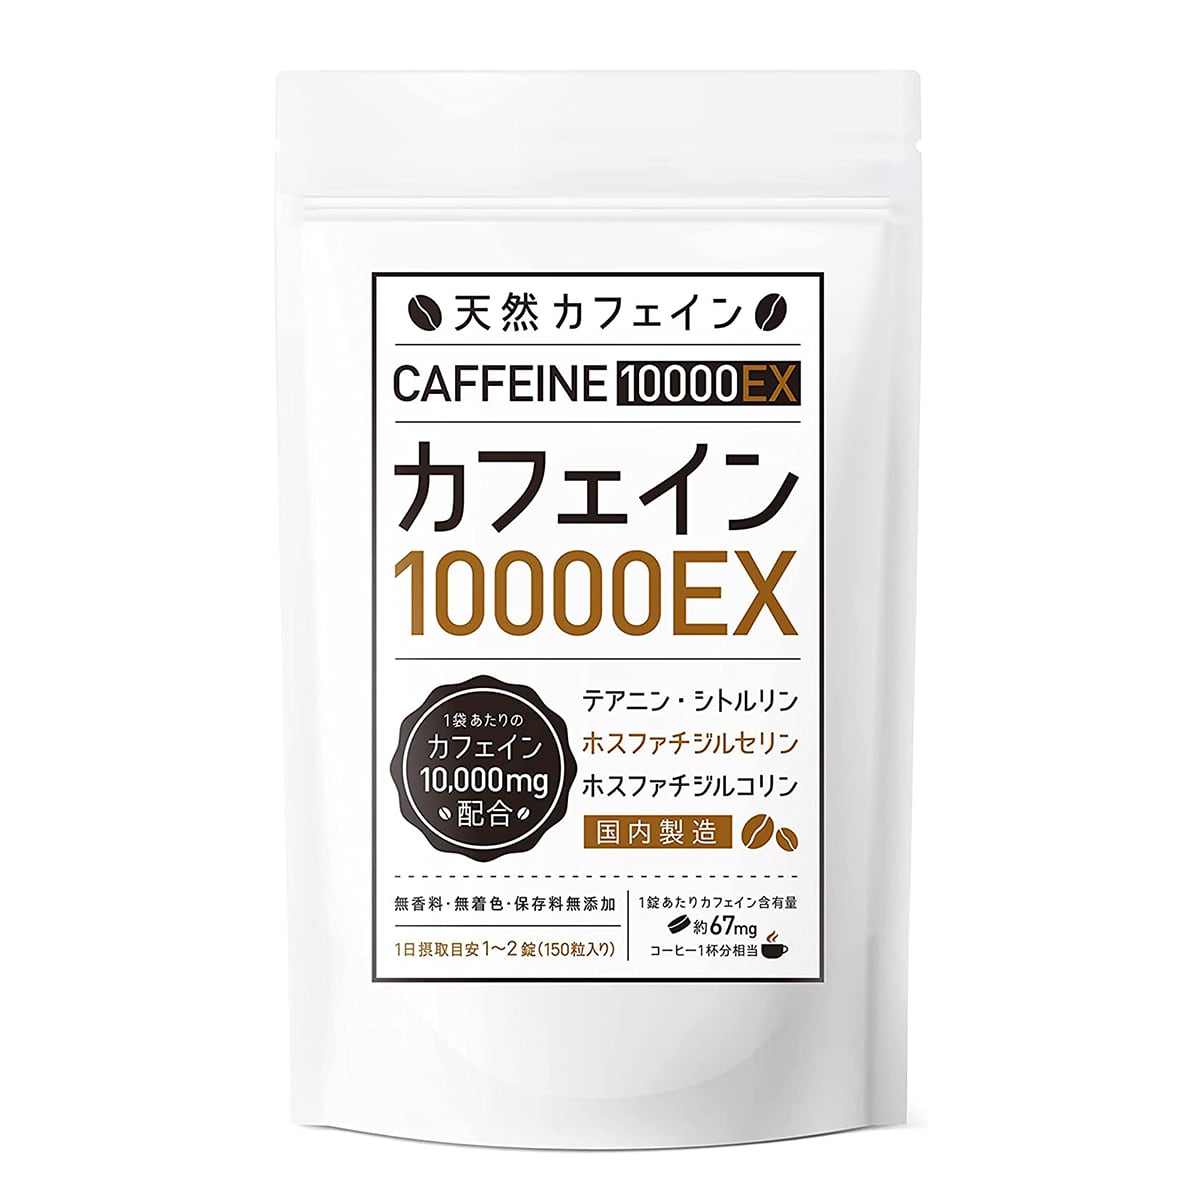 【３個まとめ買い20%OFF】カフェインサプリメント『カフェイン10000EX』